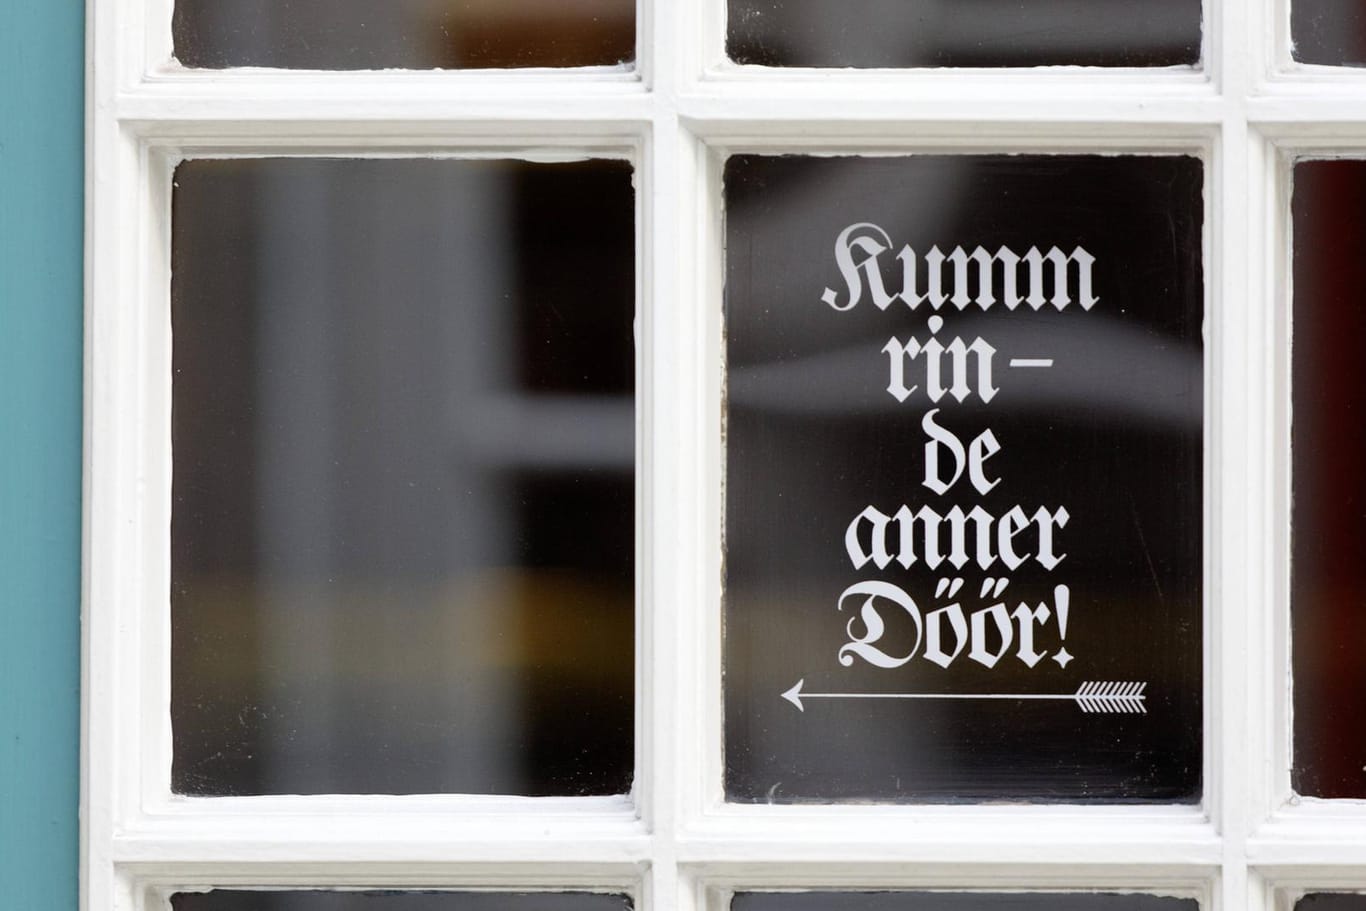 Ein Schild im mittelalterlichen Gängeviertel Schnoor in Bremen (Symbolbild): Auf Plattdeutsch steht geschrieben, dass die andere Tür benutzt werden soll.